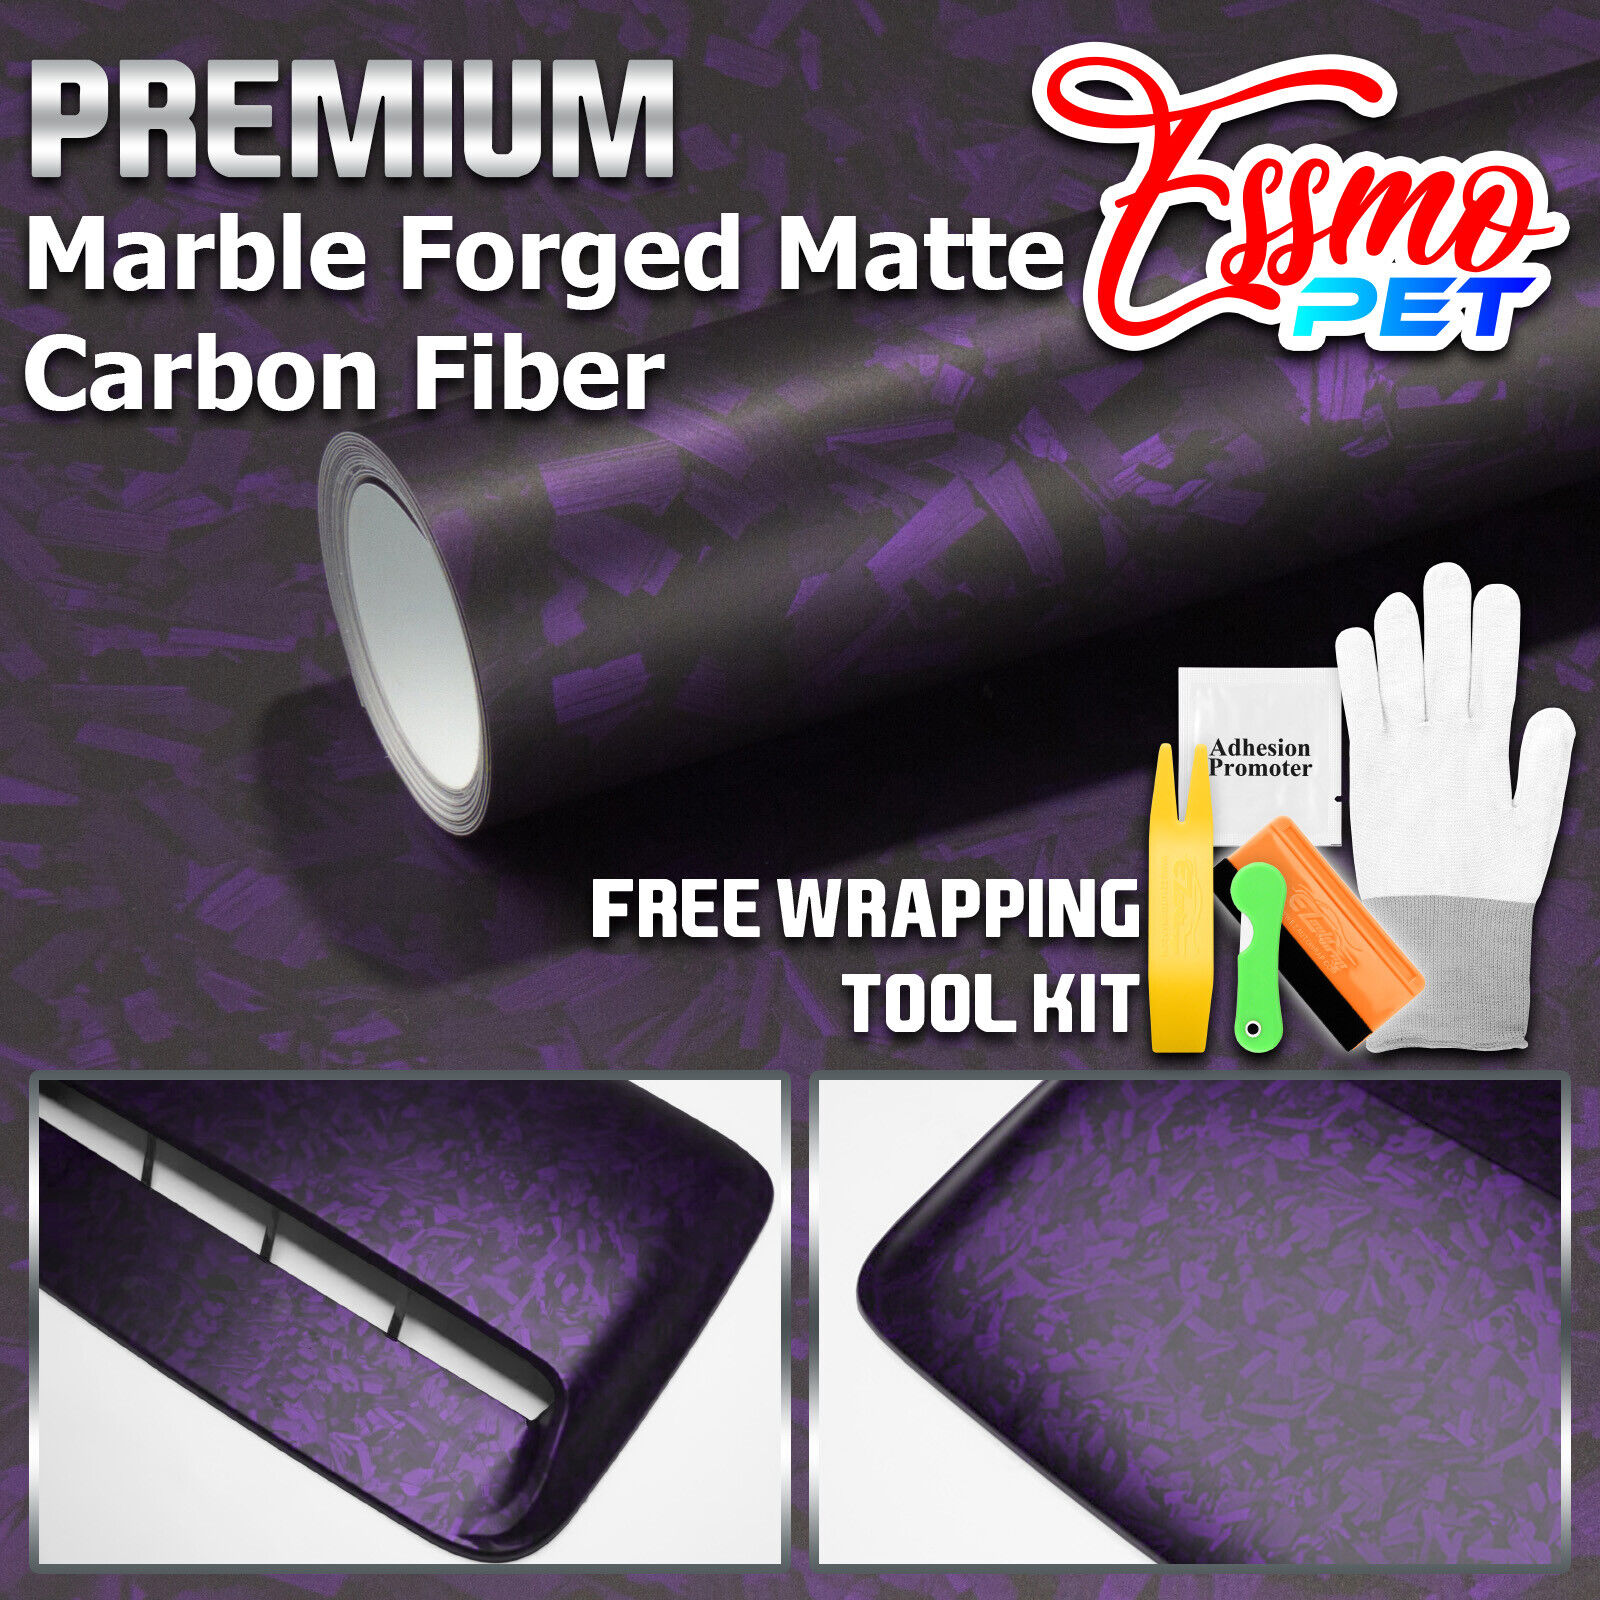 ESSMO PET Marble Forged Matte Carbon Fiber Royal Purple Car Vehicle Vinyl Wrap